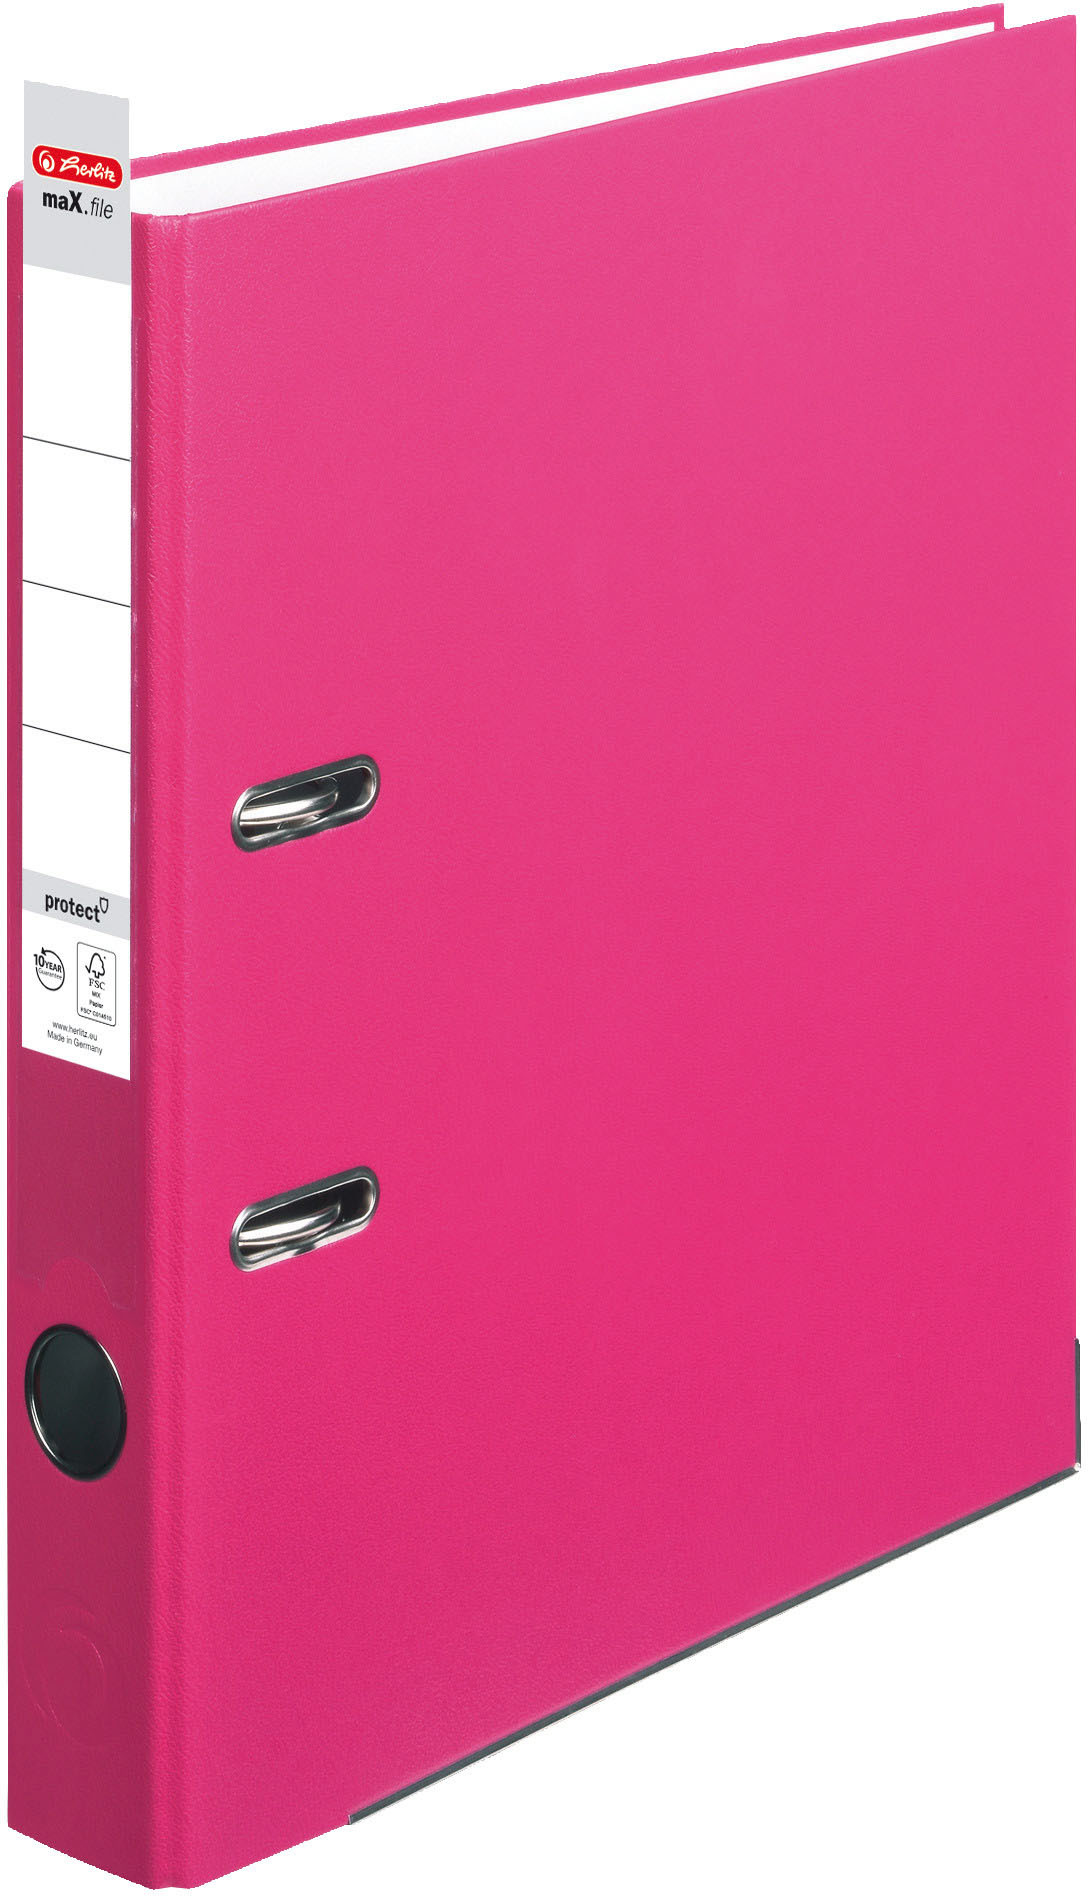 HERLITZ Classeur maX.file 5cm 11053691 pink A4